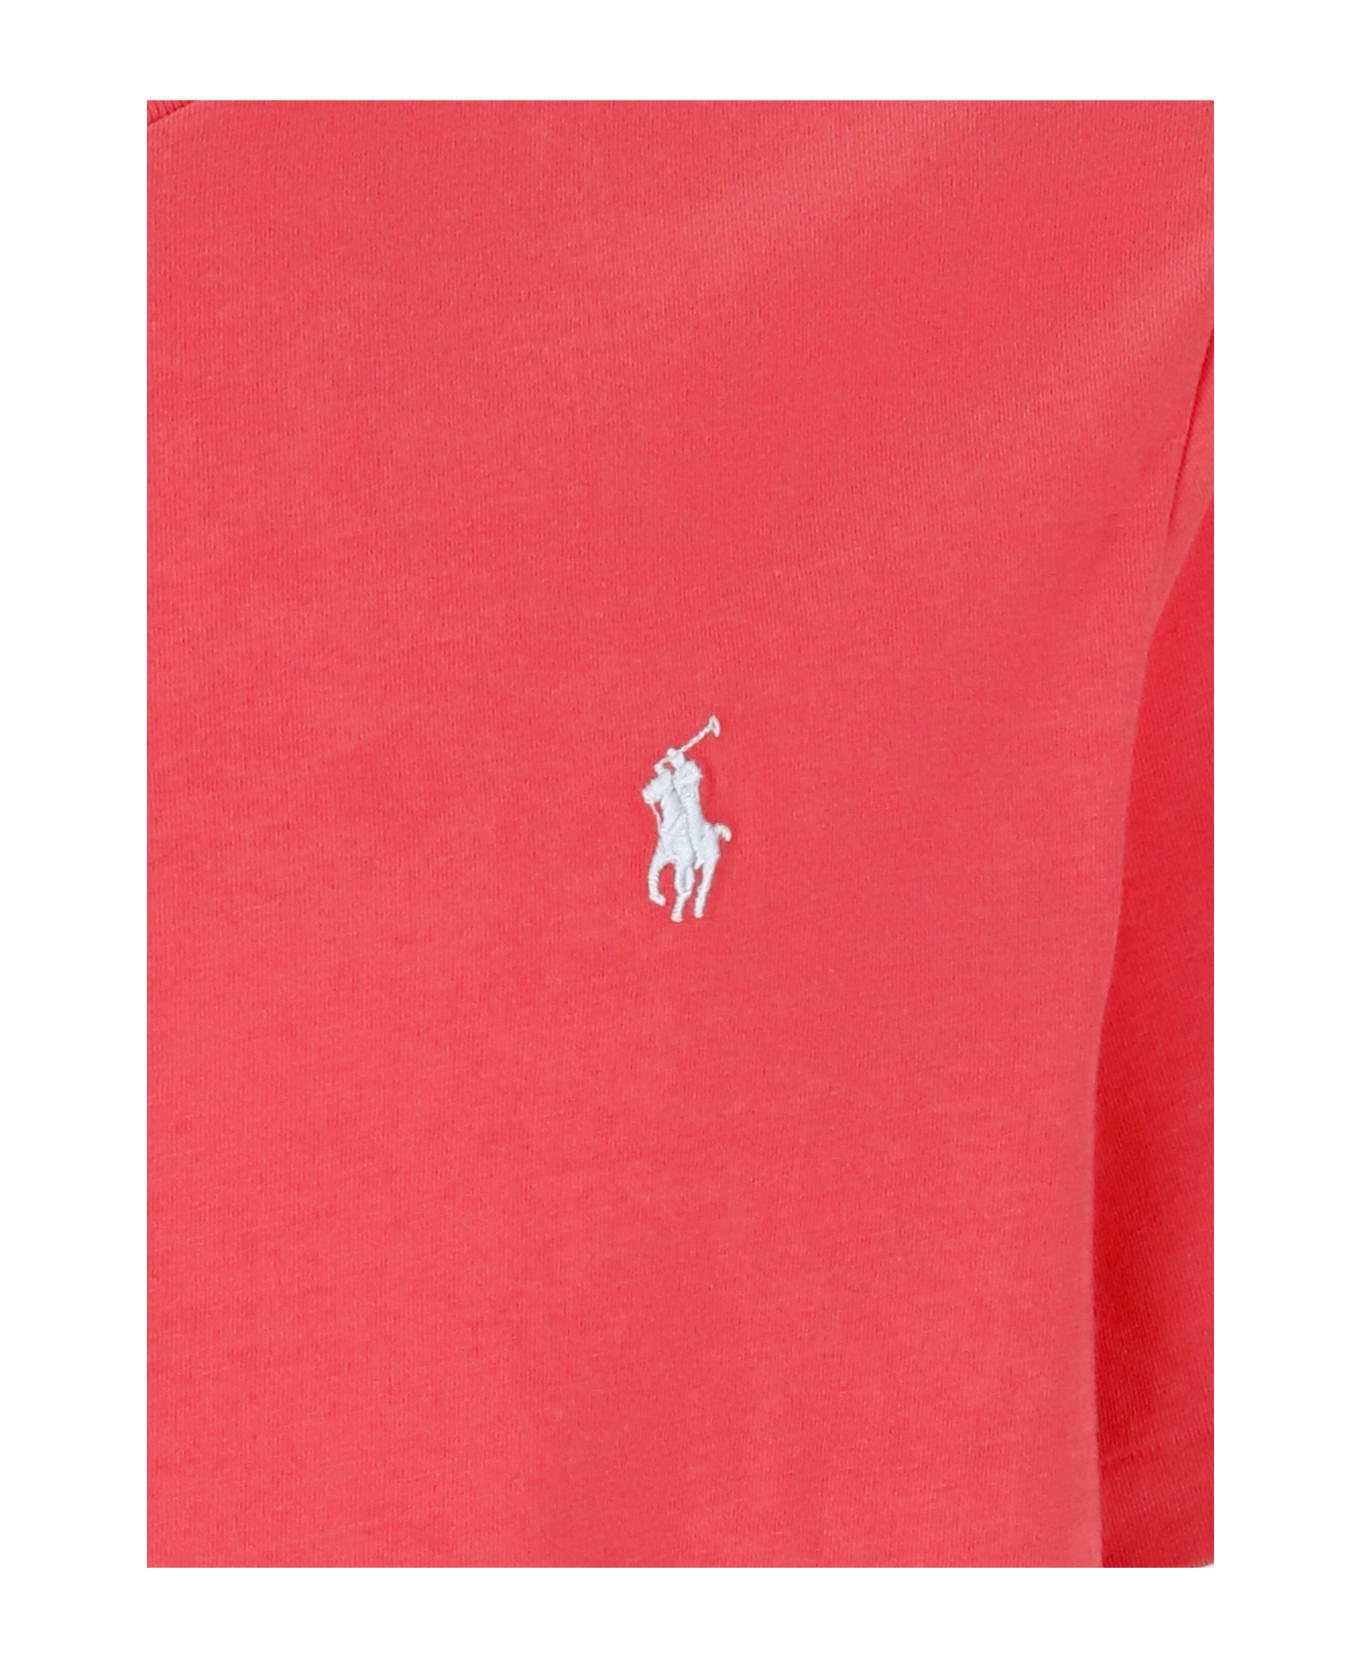 Ralph Lauren Pony T-shirt - Red